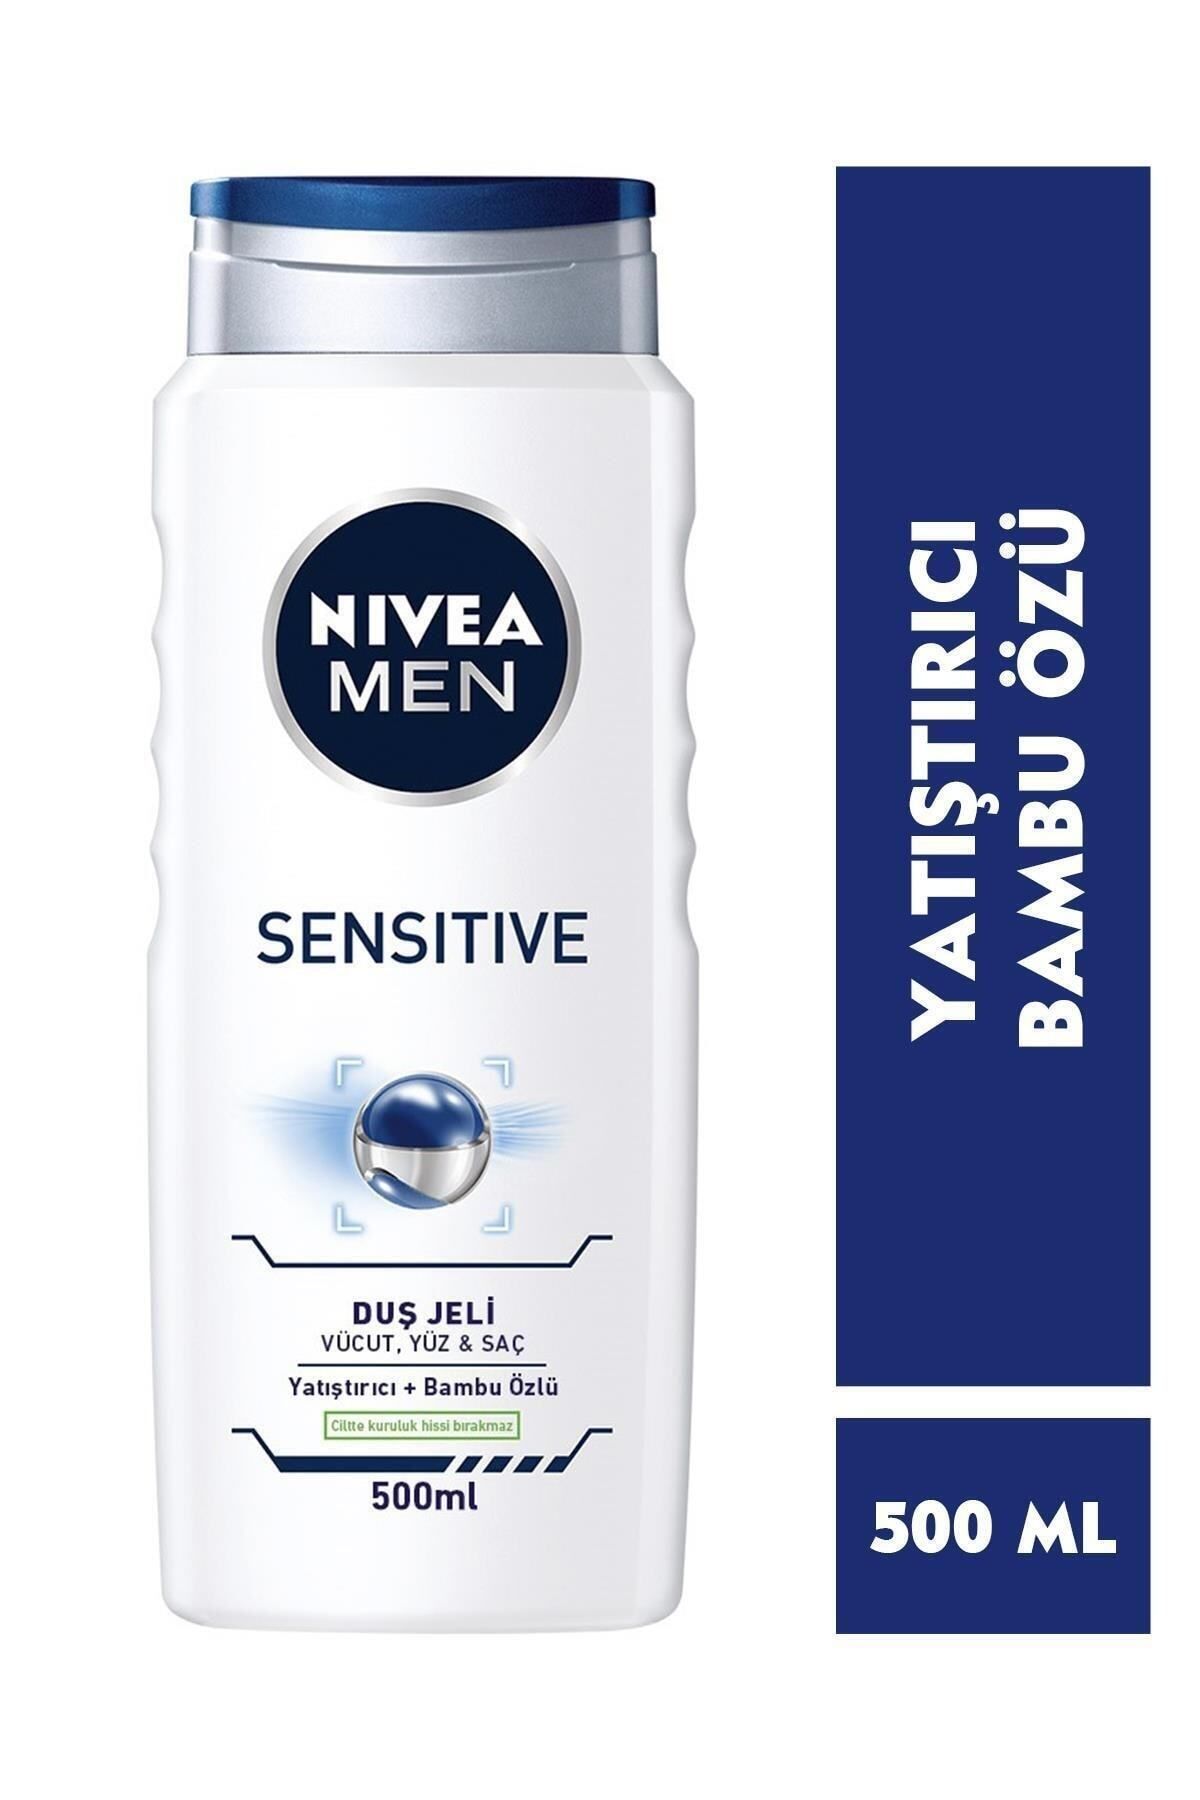 NIVEA Men Sensitive Erkek Duş Jeli 500 Ml, 3'ü 1 Arada Kullanım,vücut, Yüz, Saç Için